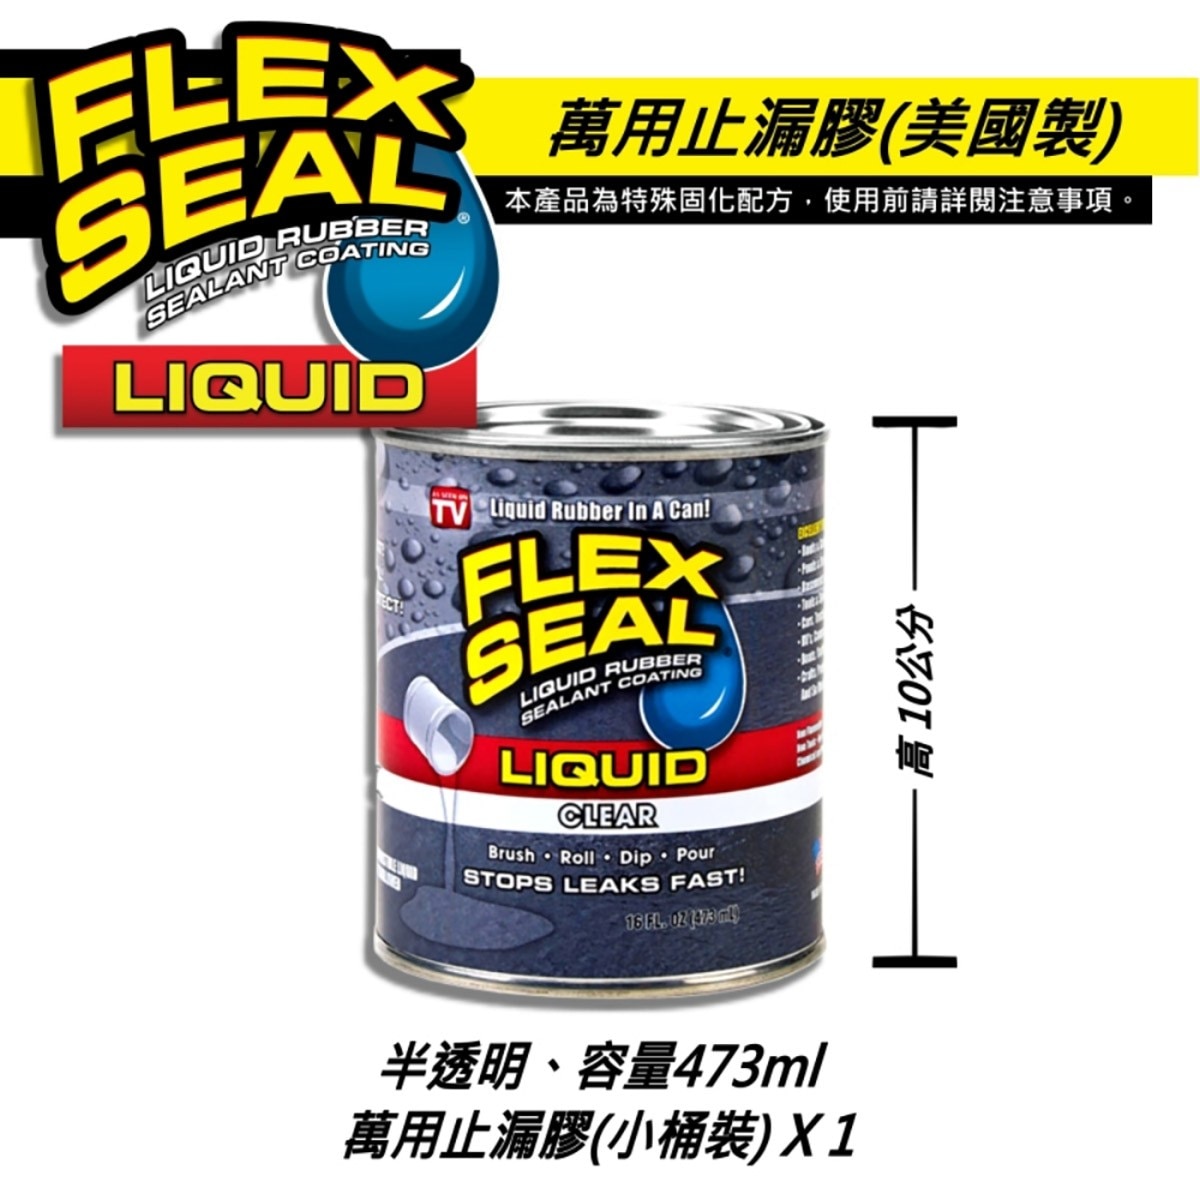 美國製FLEX SEAL LIQUID萬用止漏膠亮半透明，16oz小桶裝，固化乾燥後呈彈性橡膠，富彈性，耐曬抗風化，不變質、不乾裂，止漏膠可滲入縫隙完美填補。